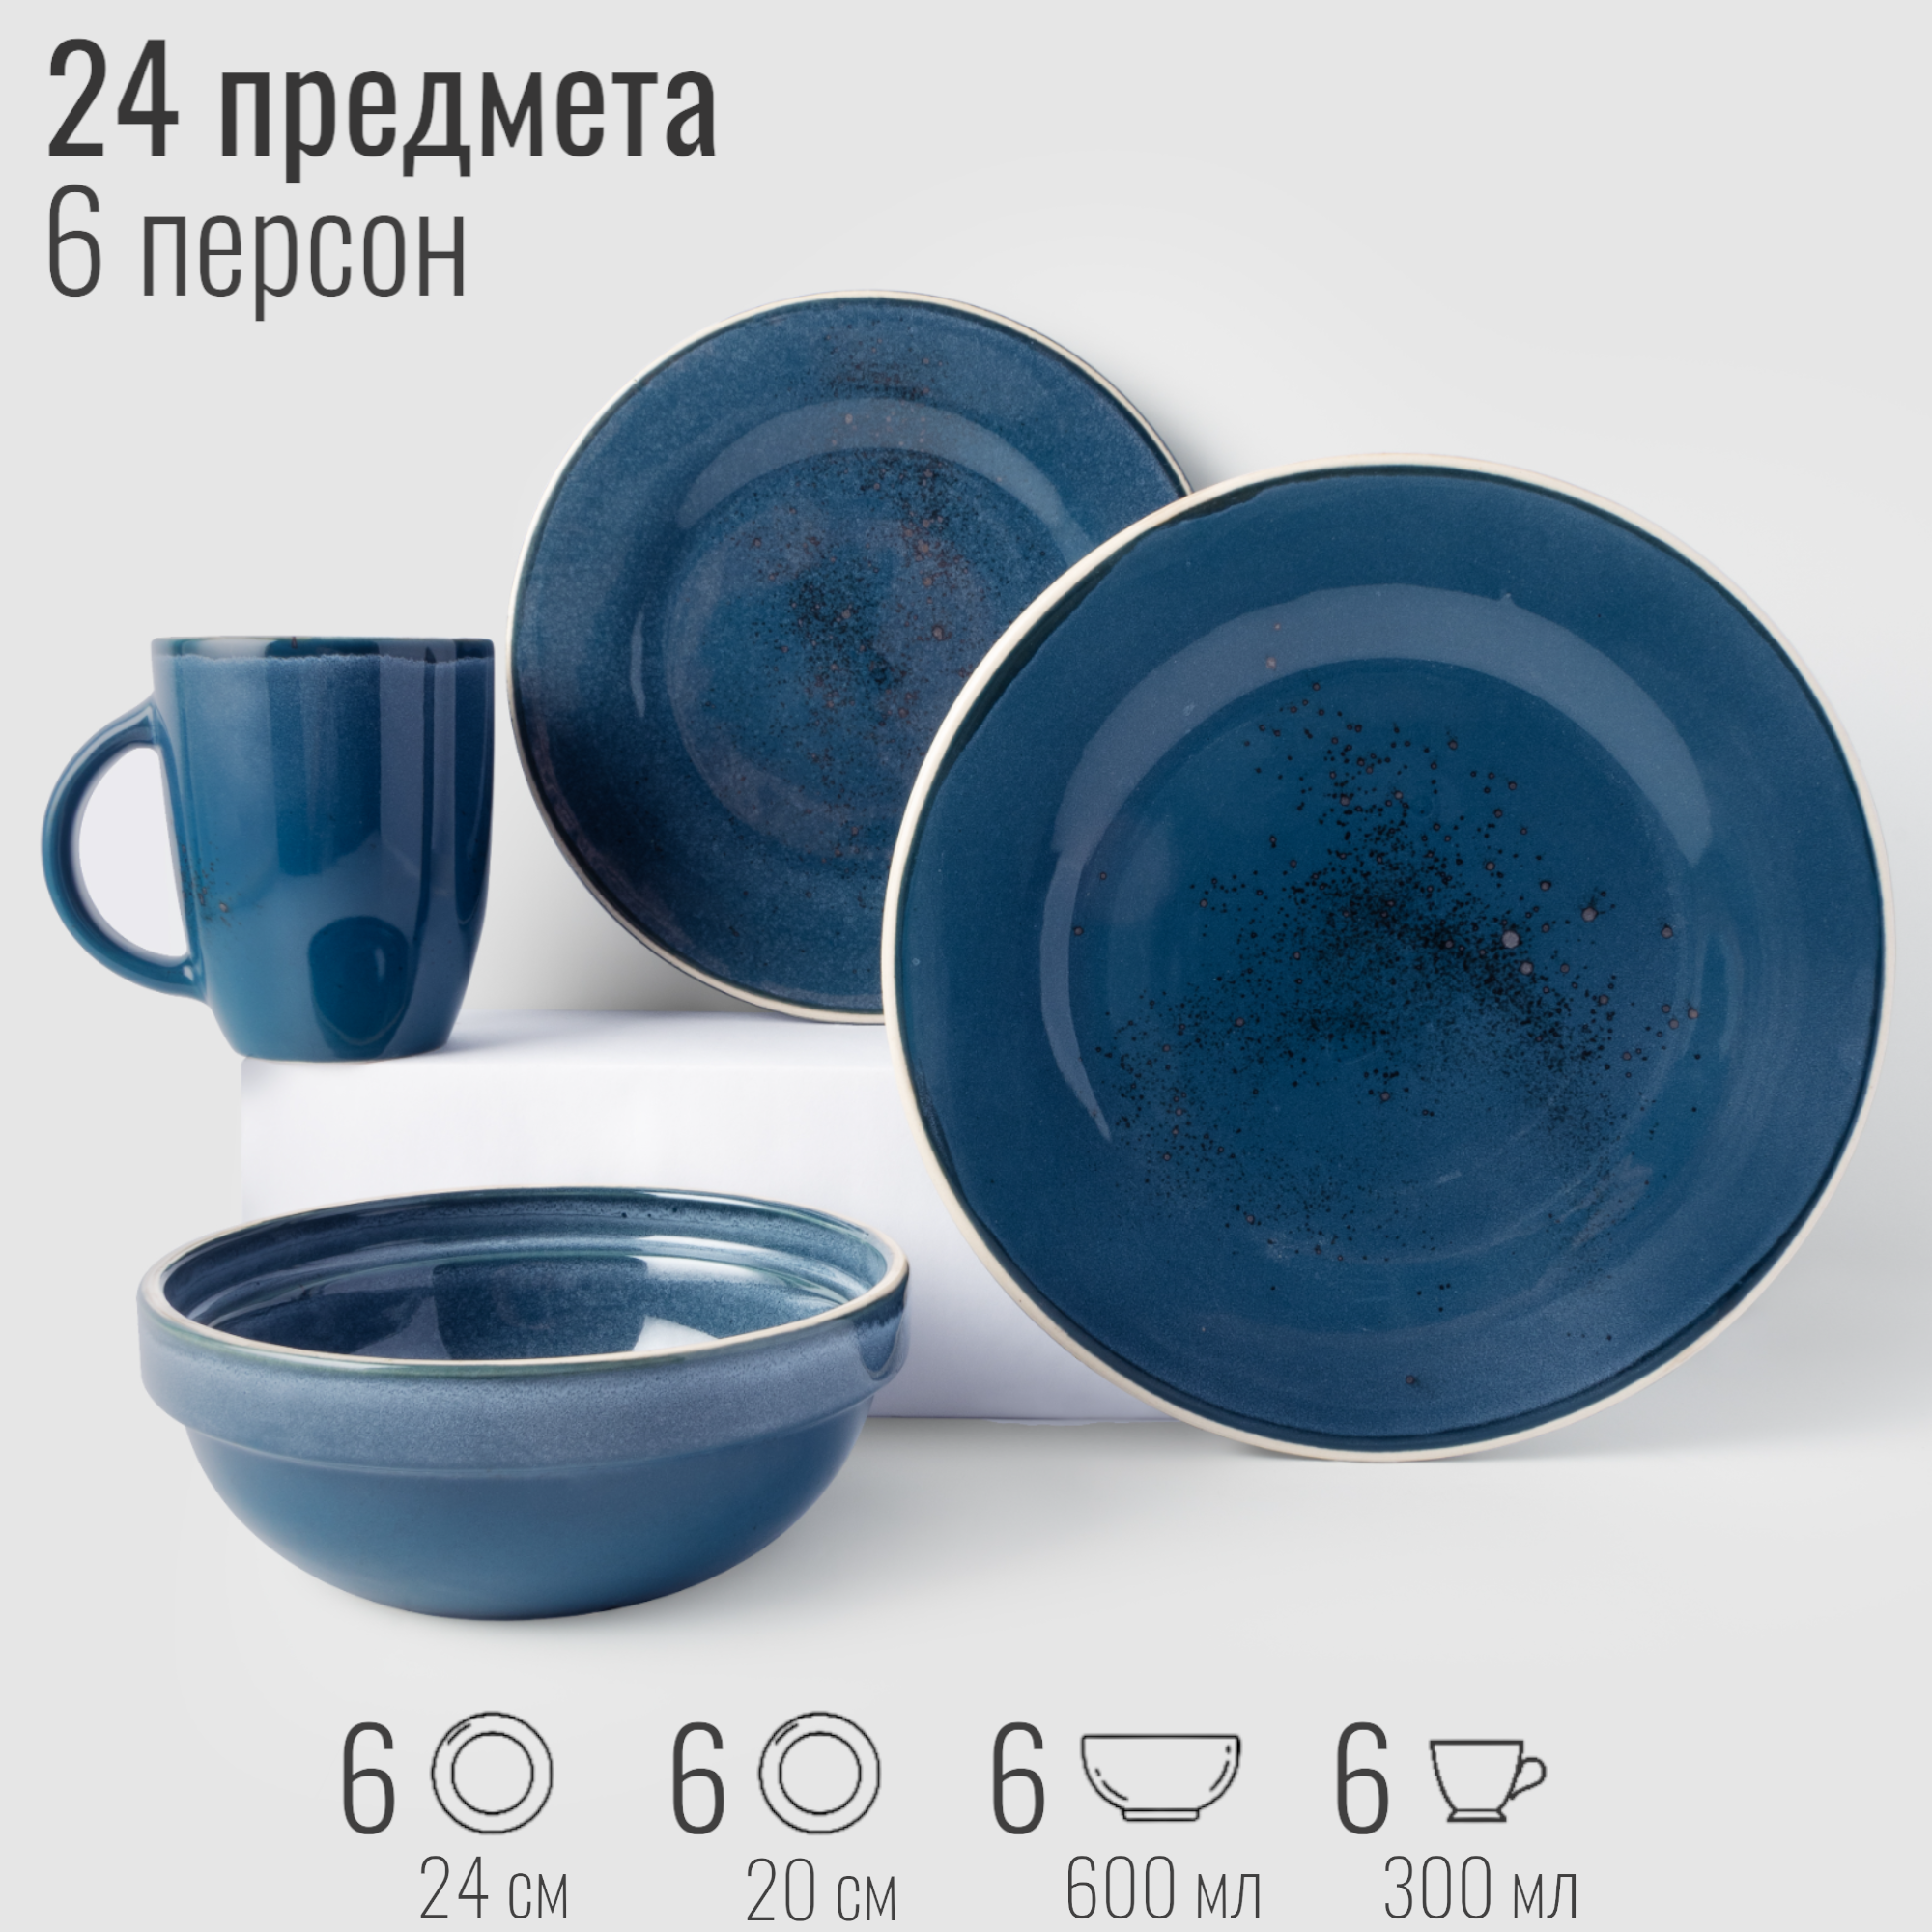 Набор посуды столовой на 6 персон, 24 предмета "Блу Реаттиво", фарфор, сервиз обеденный, цвет синий